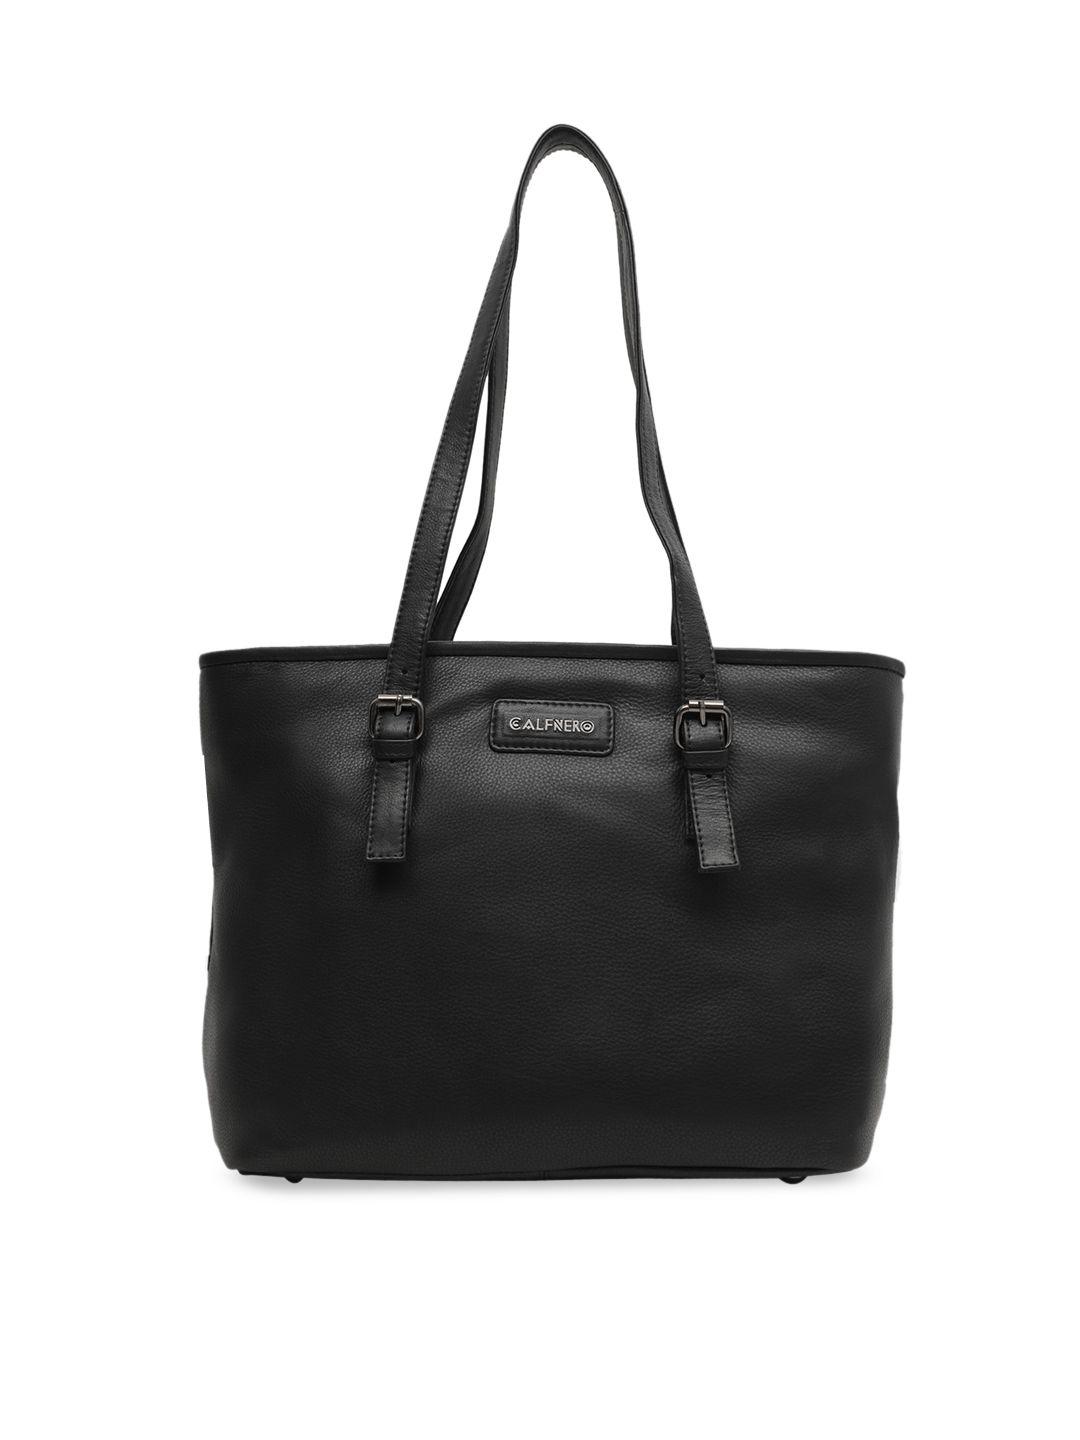 calfnero black leather structured shoulder bag